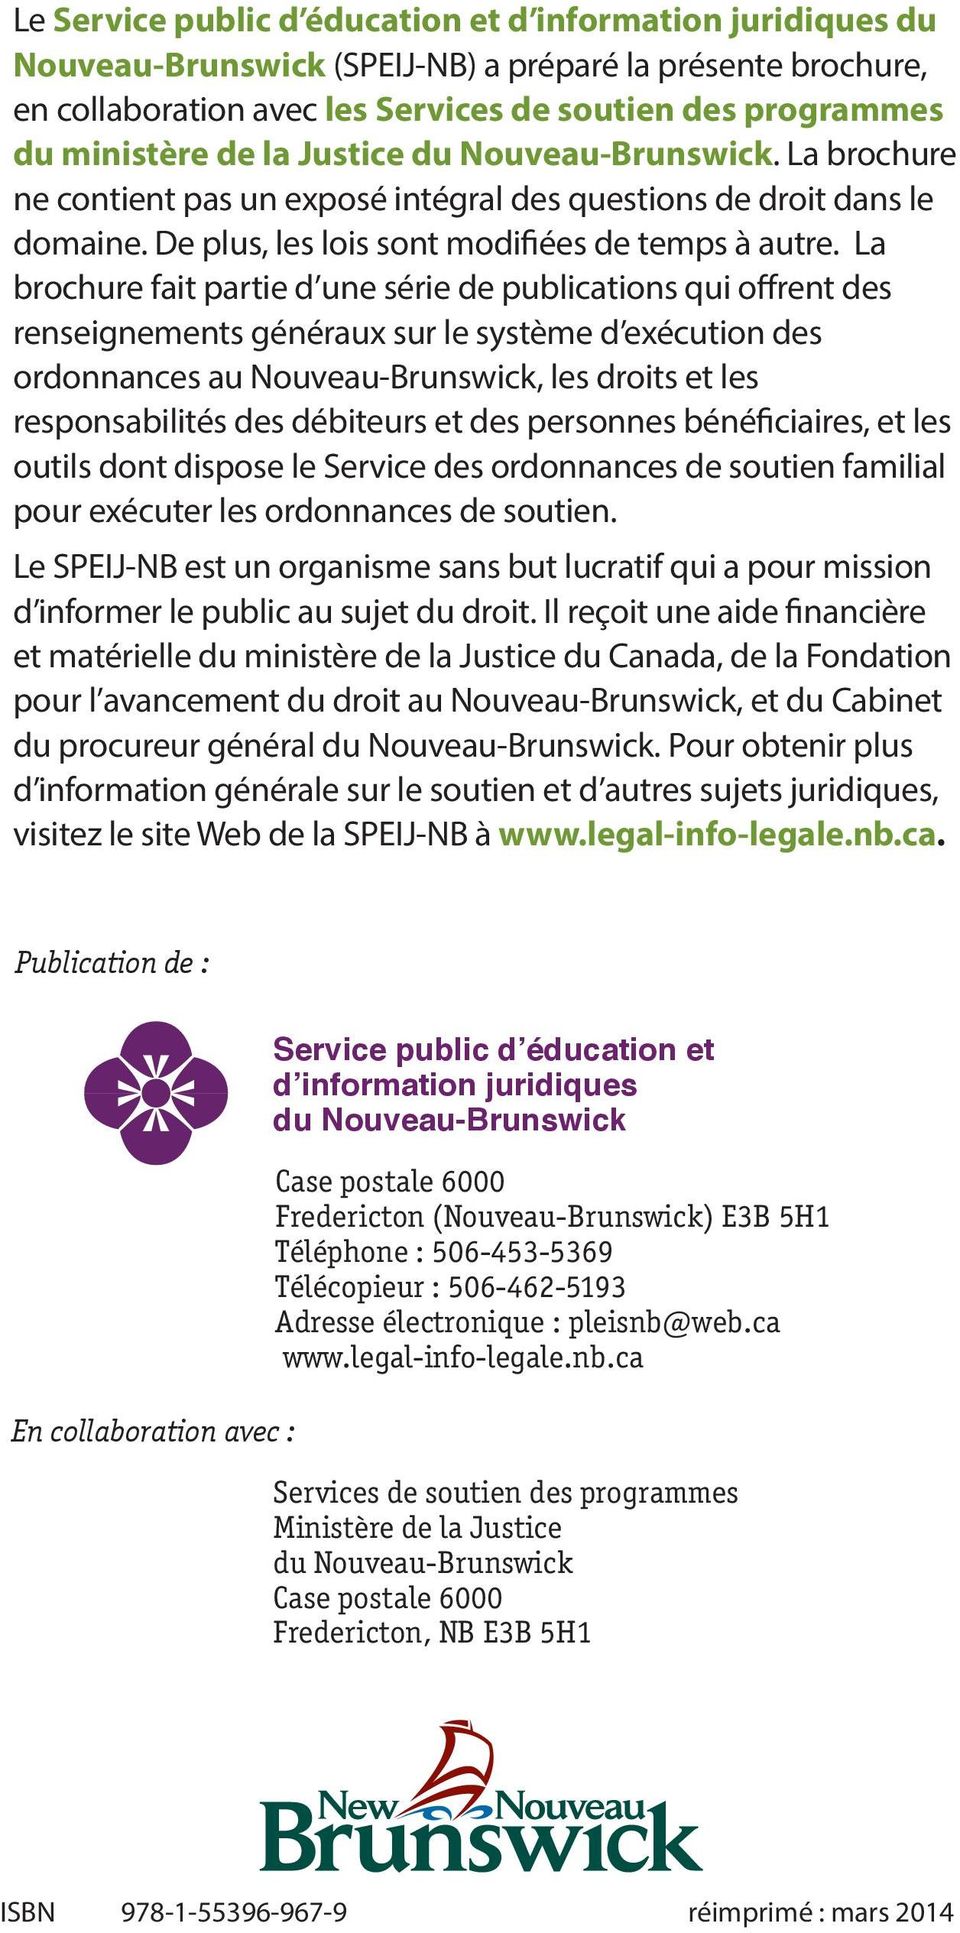 La brochure fait partie d une série de publications qui offrent des renseignements généraux sur le système d exécution des ordonnances au Nouveau-Brunswick, les droits et les responsabilités des